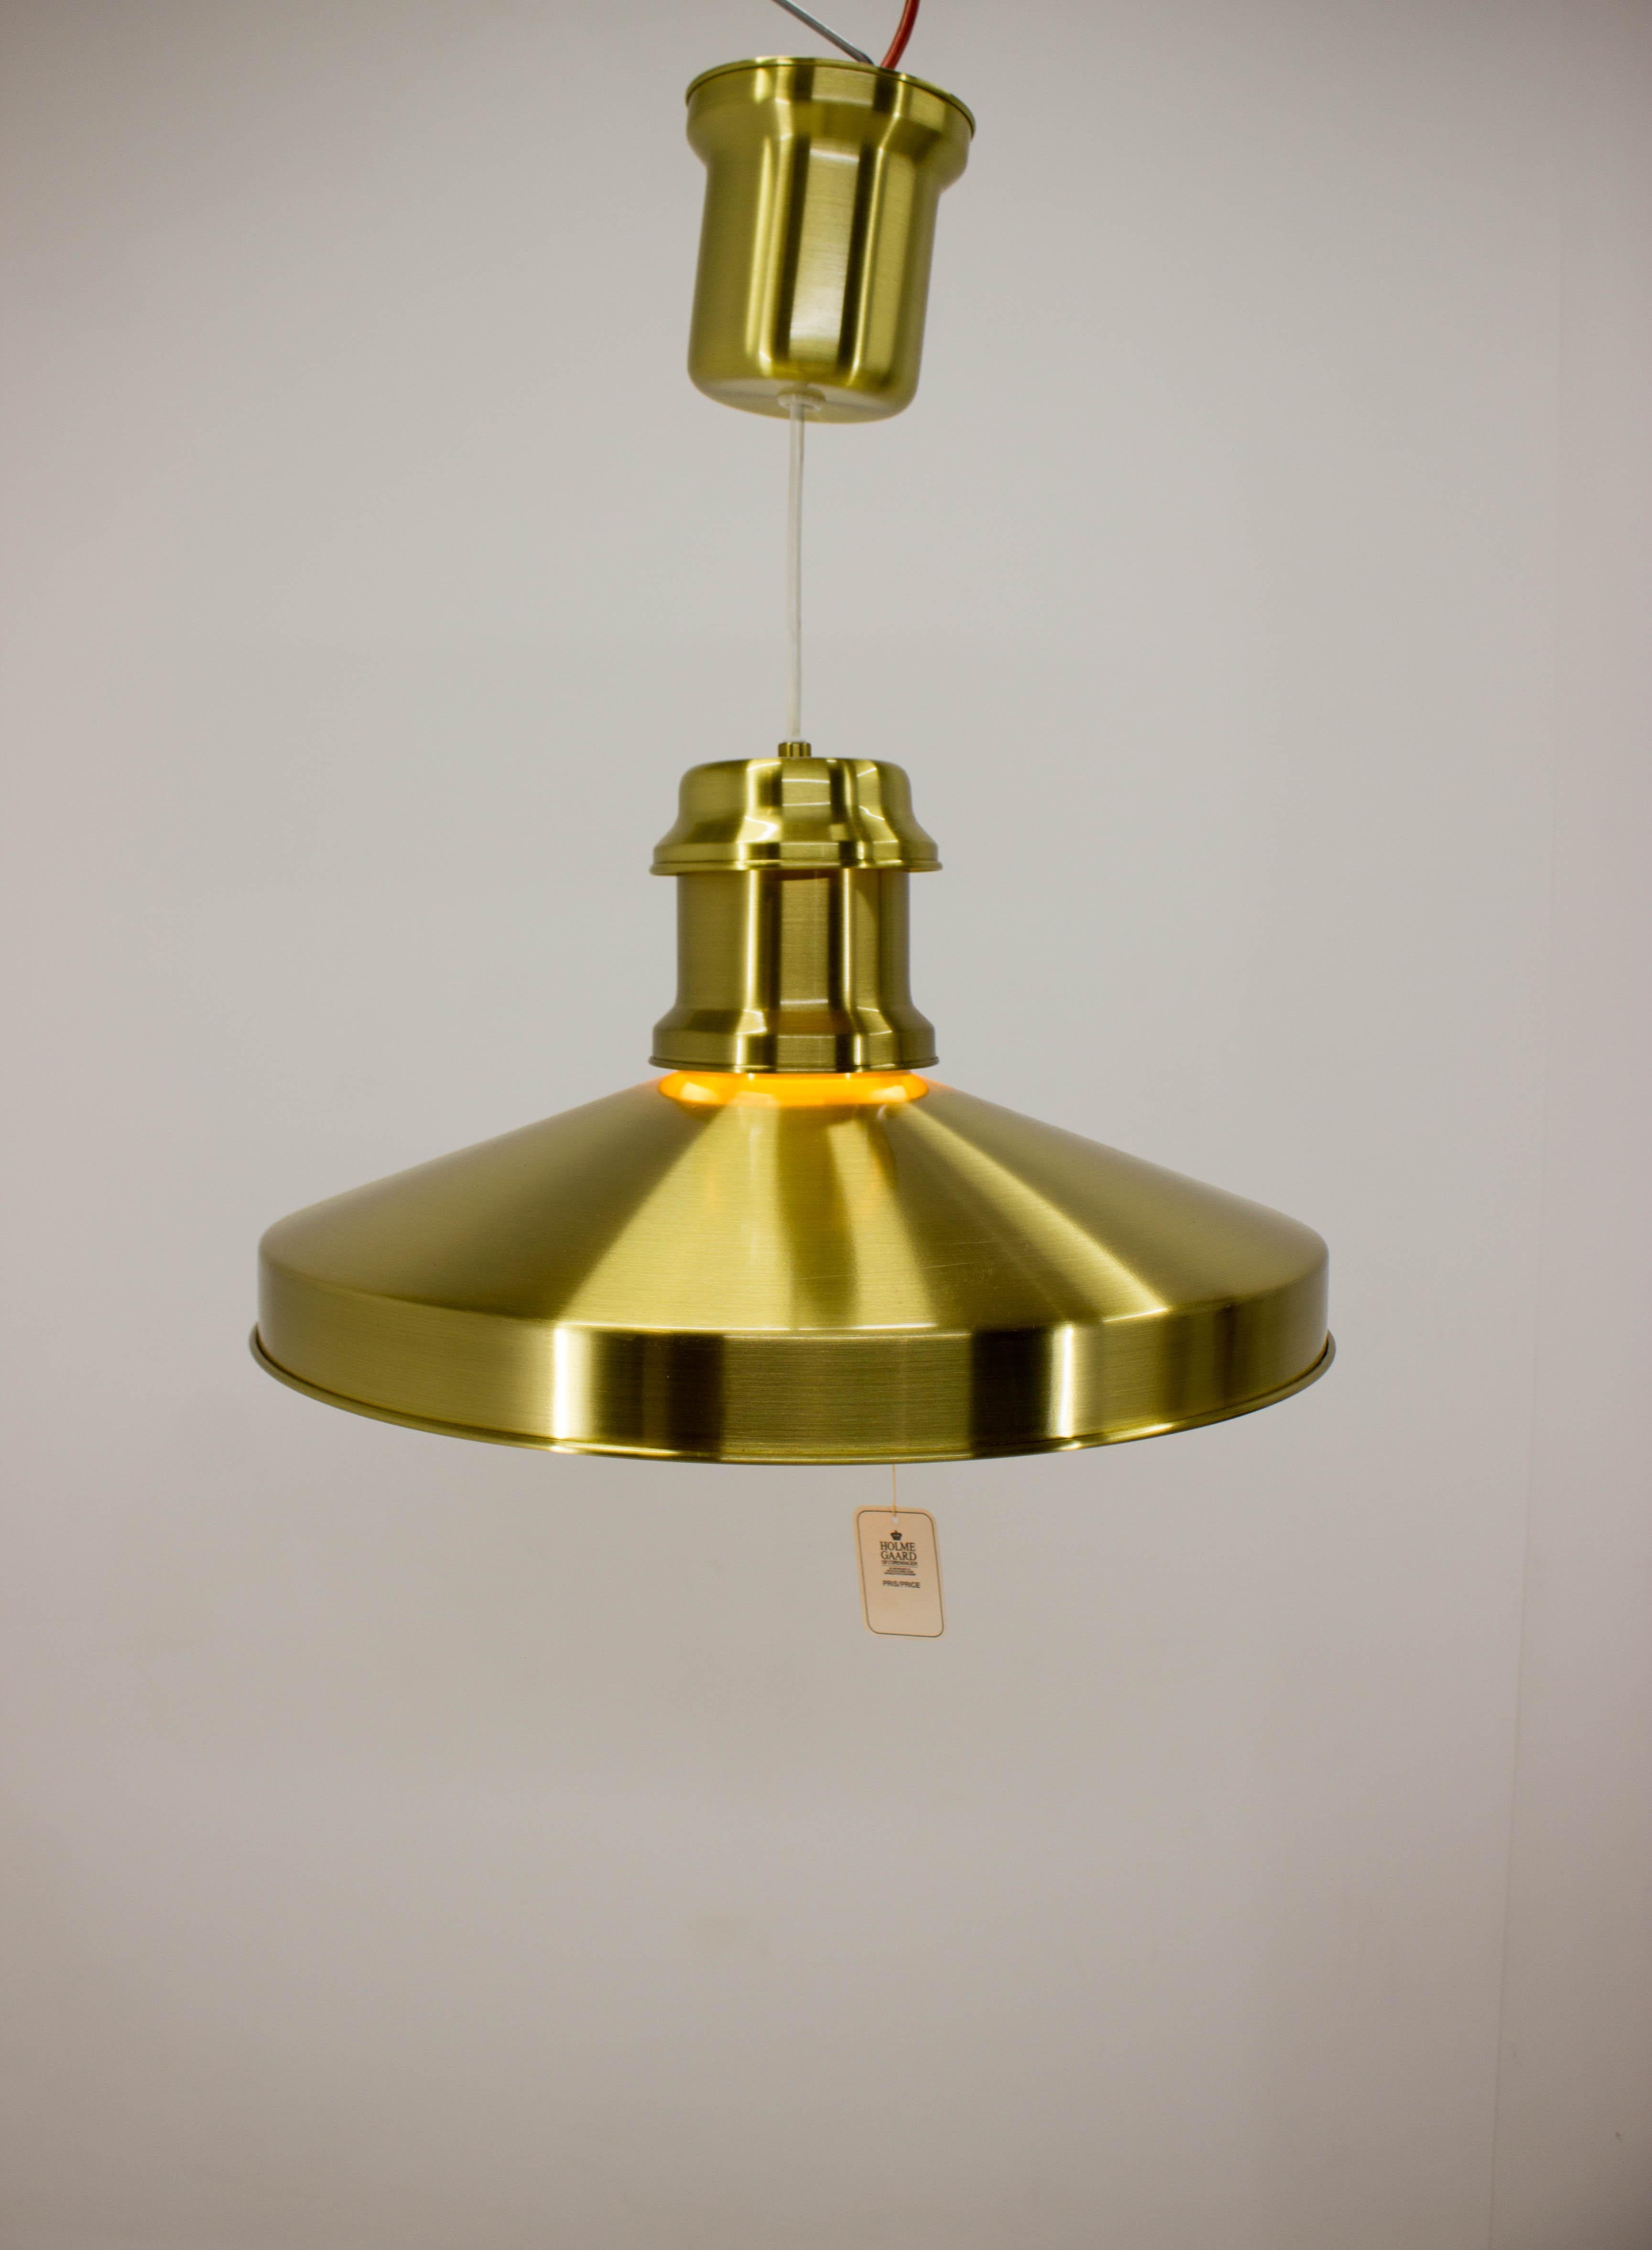 Lampe de bateau jamais utilisée de Sidse Werner pour Holmegaard, 1970, emballée à l'origine. Mesures : Hauteur réglable, max. 144cm, min. 45cm. Cache-ampoule en verre de lait.